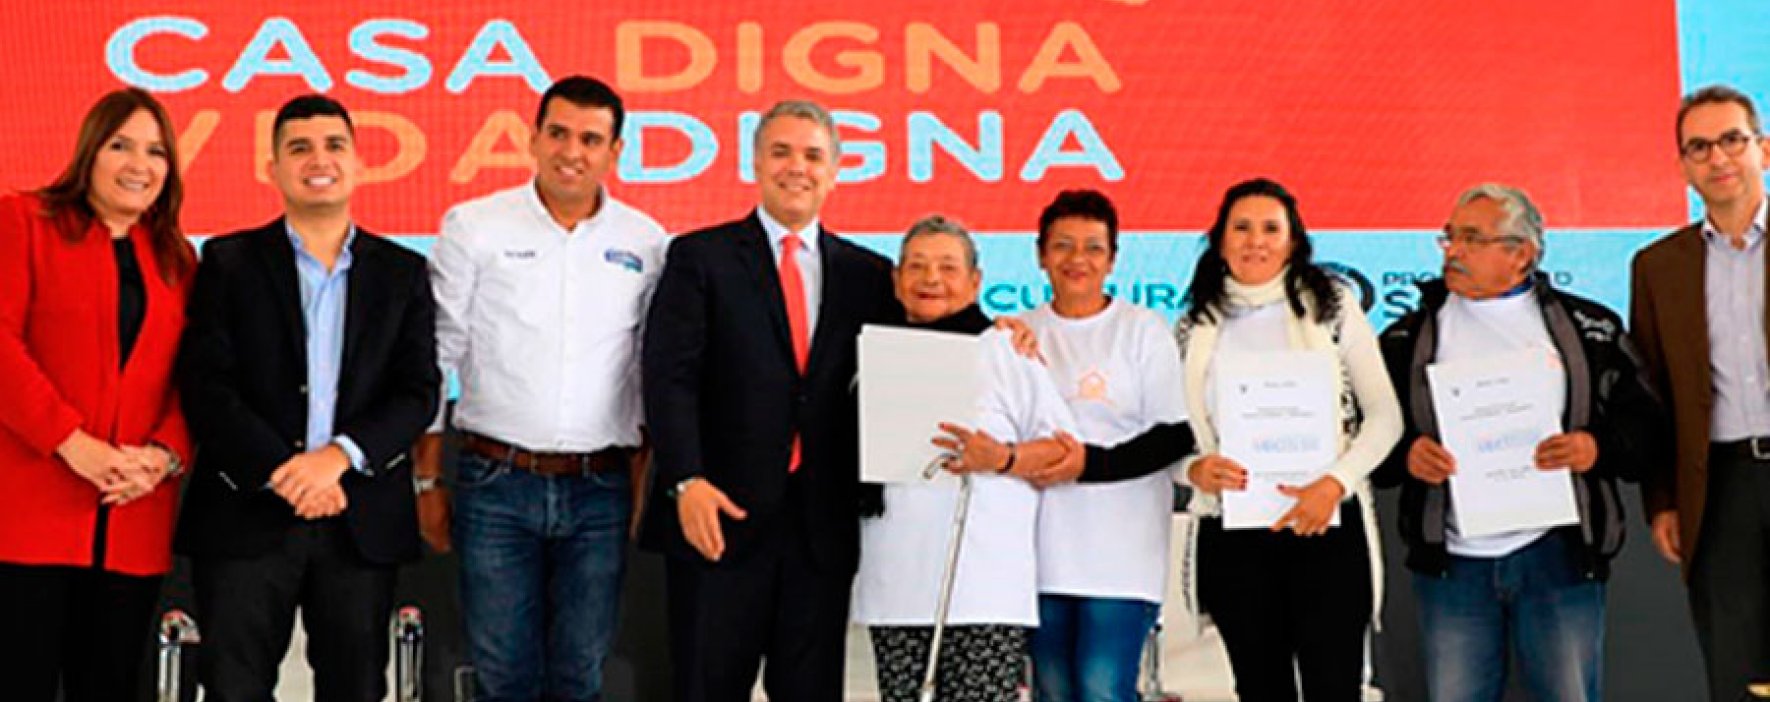 ‘Casa Digna Vida Digna’, nuevo programa de vivienda del gobierno colombiano 